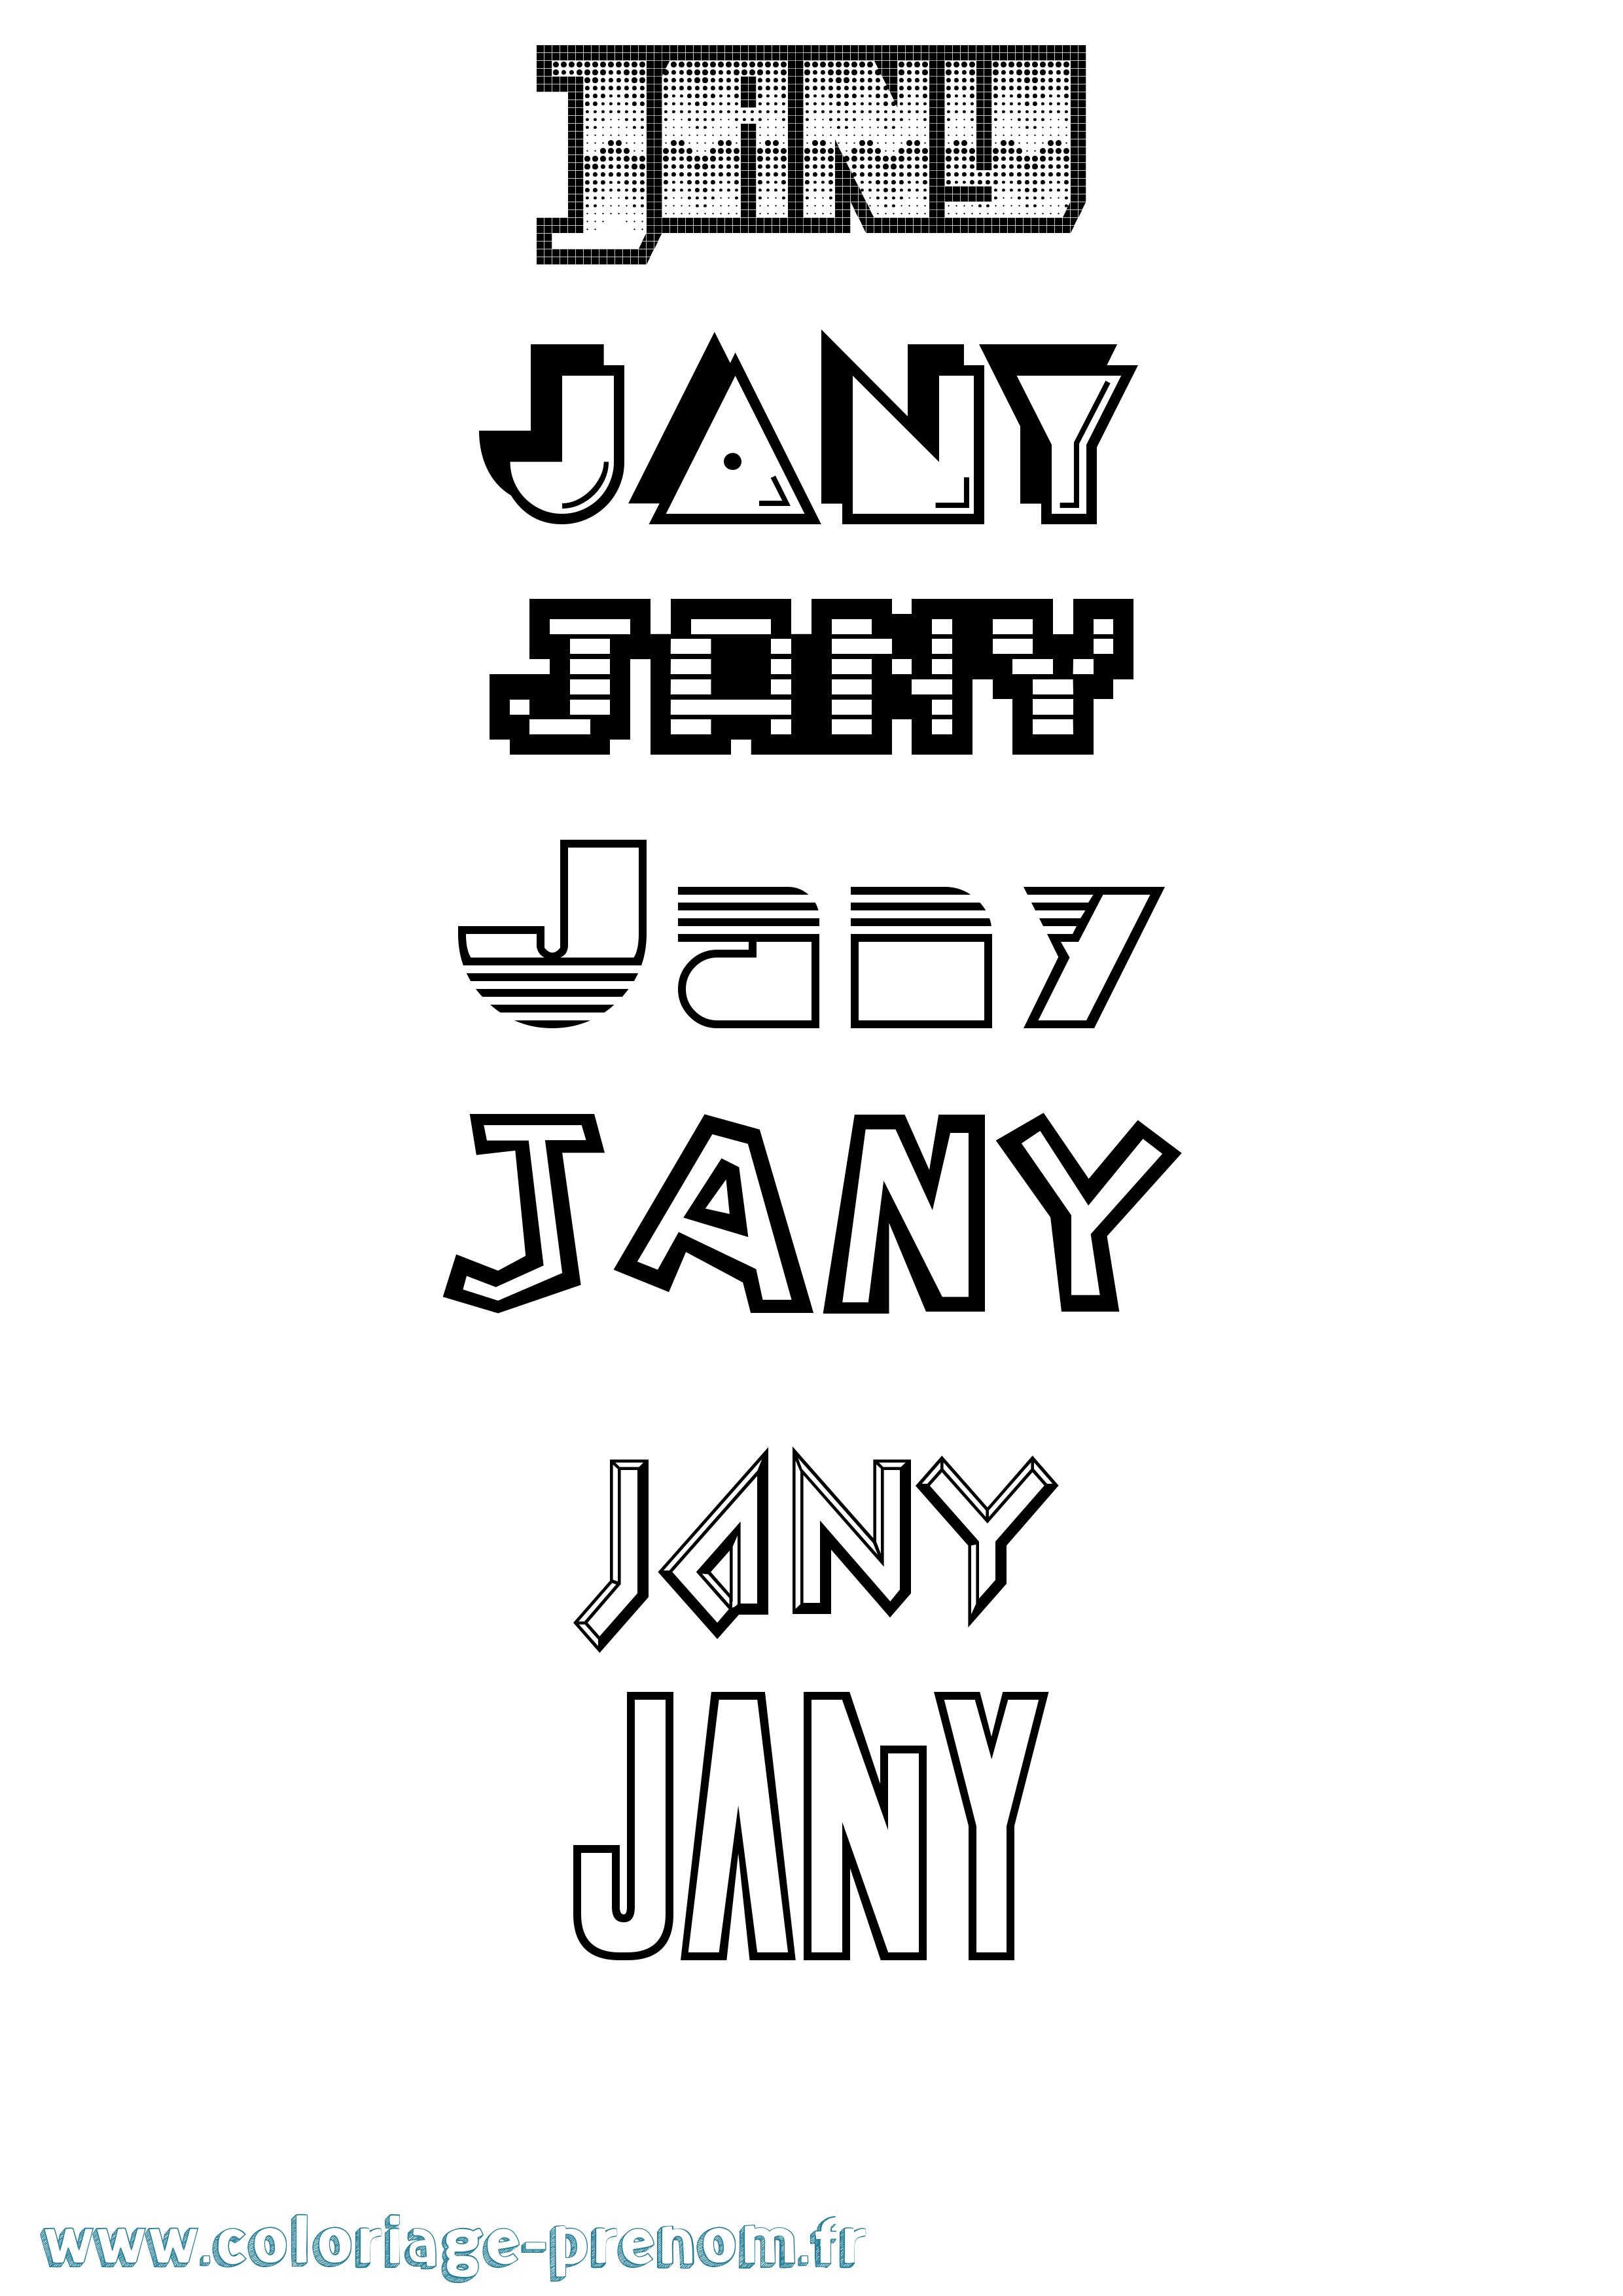 Coloriage prénom Jany Jeux Vidéos